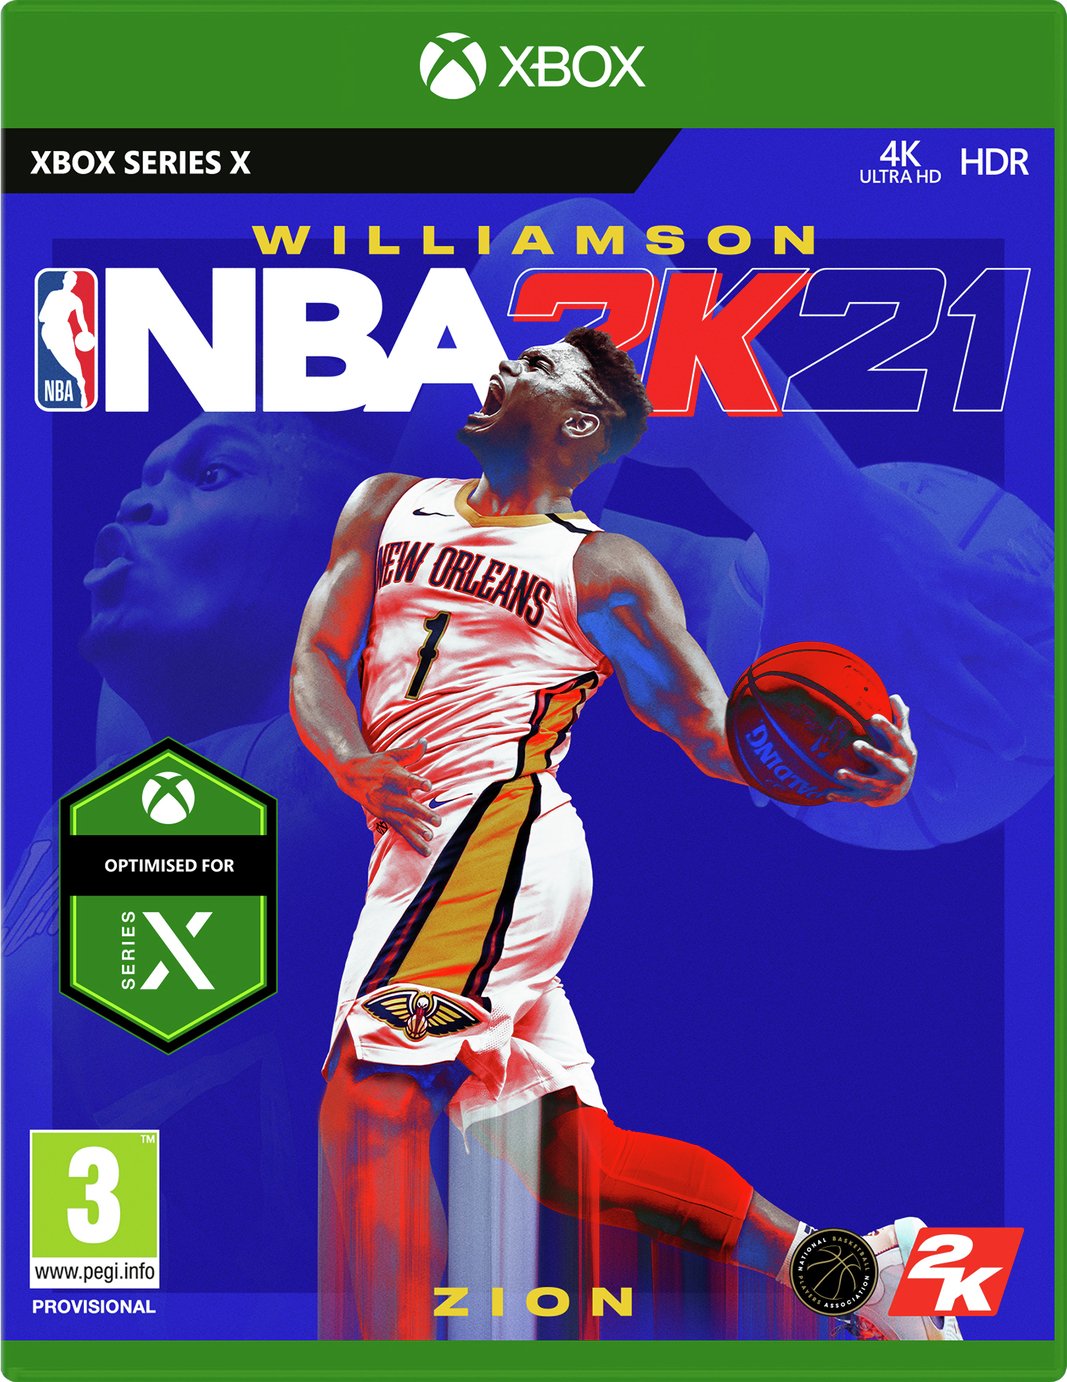 NBA 2K21 Xbox Series X Game Pre-Order Review